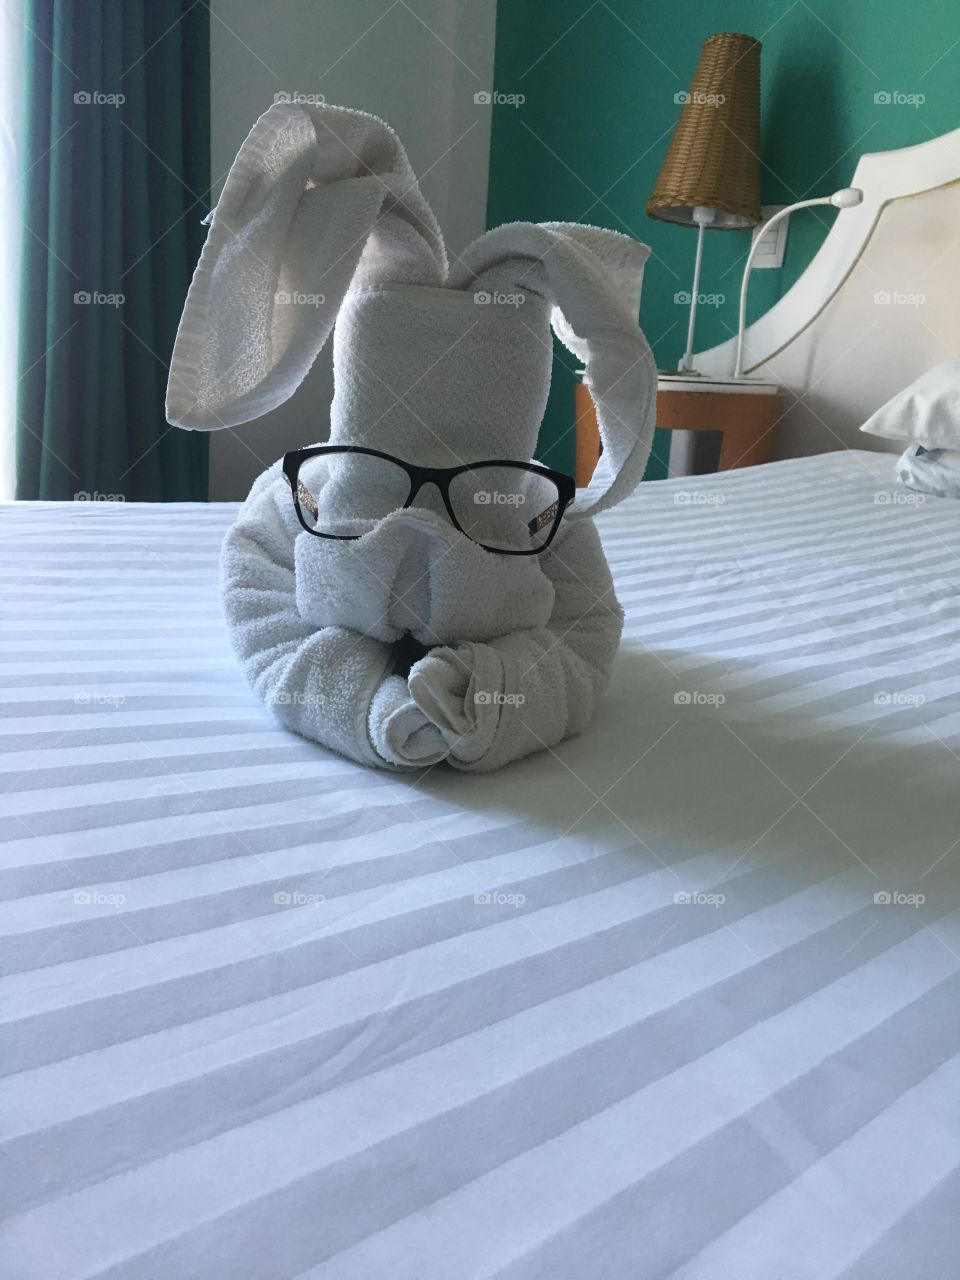 Quando vc chega no seu quarto do hotel e se surpreende com um coelho feito com toalha! E mais, a camareira ainda tomou o cuidado pra fazer ele enxergar melhor.